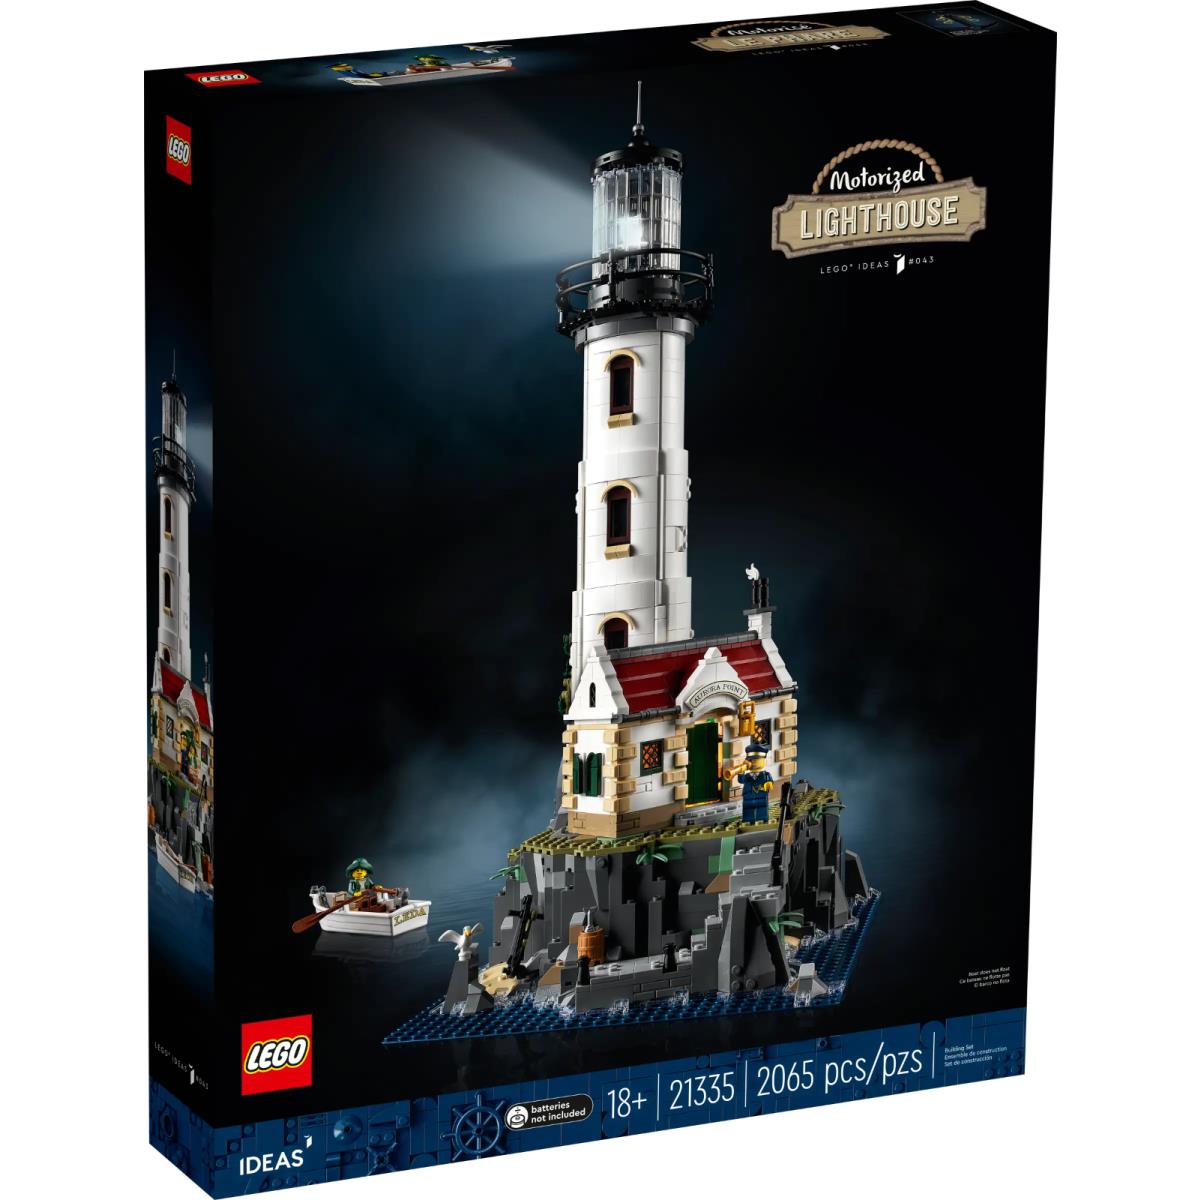 Lego Ideas 21335 Motorized Lighthouse